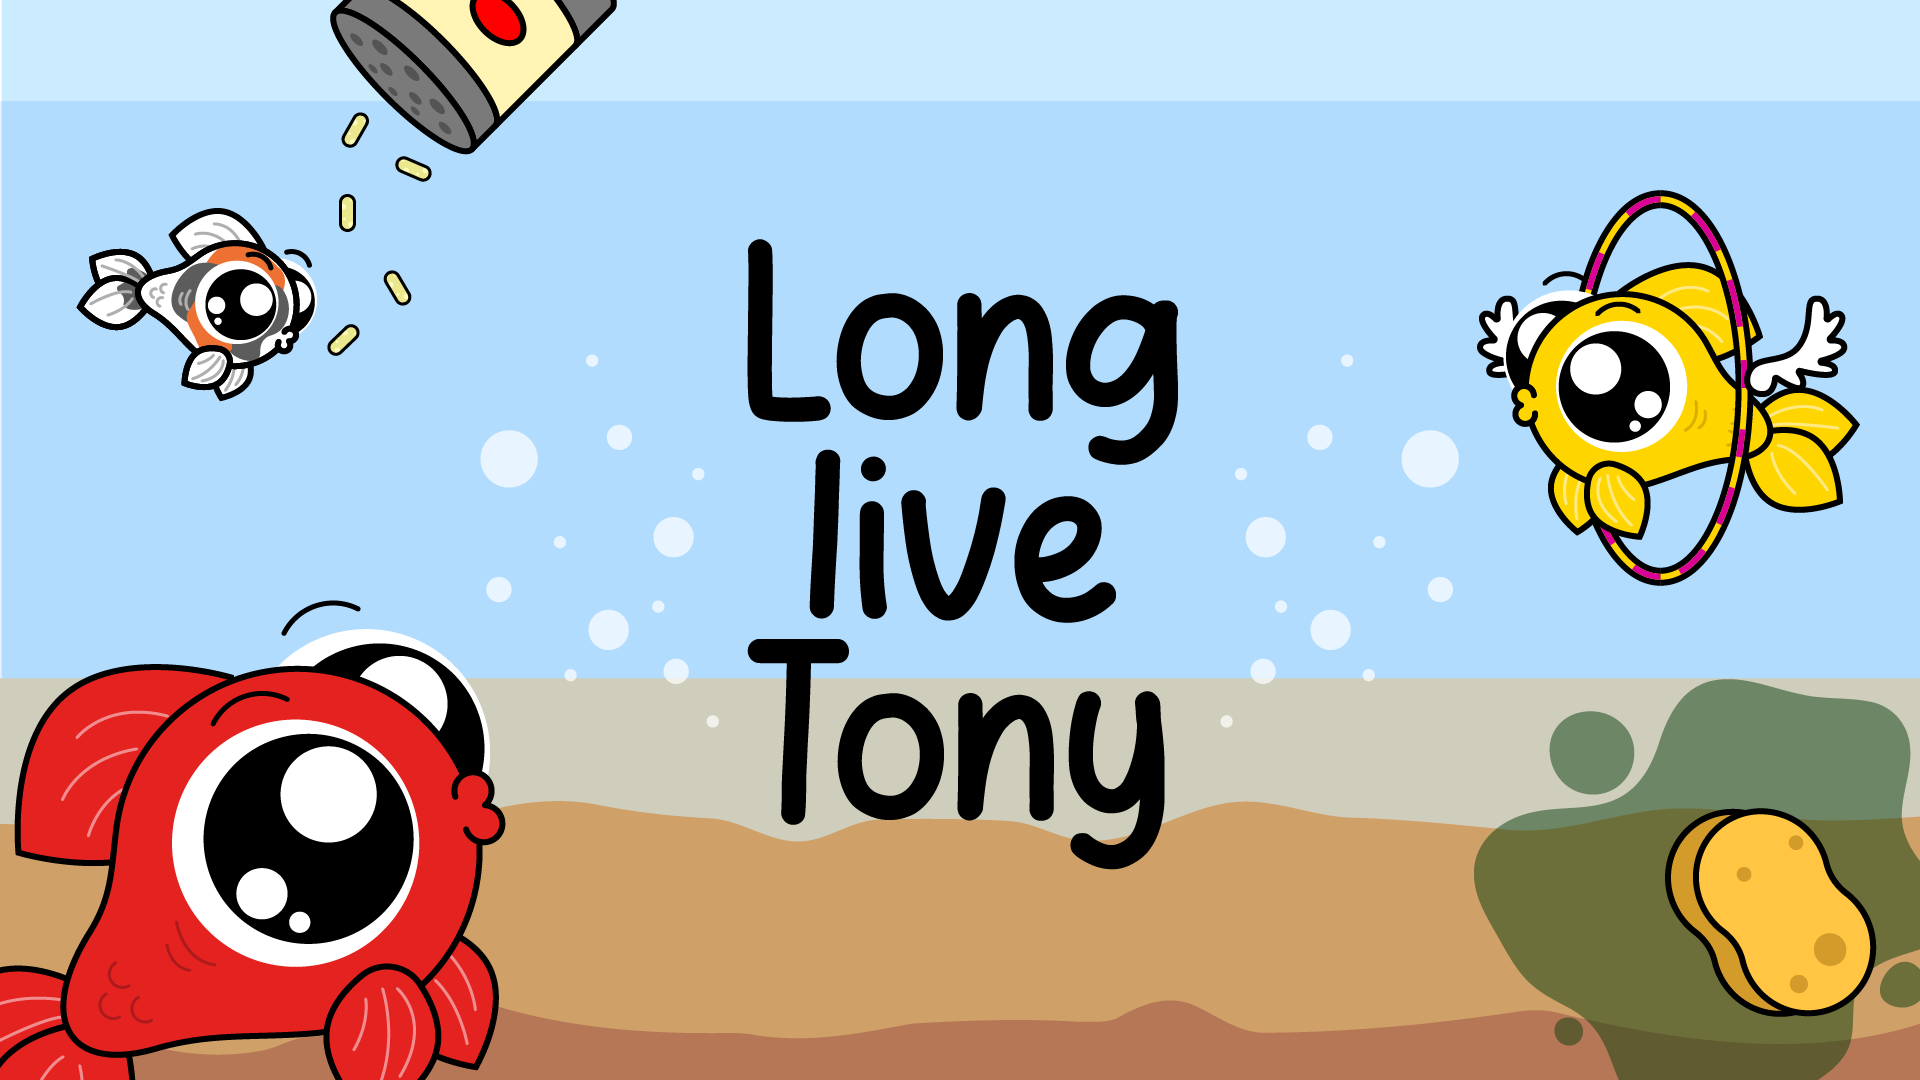 Long live Tony!